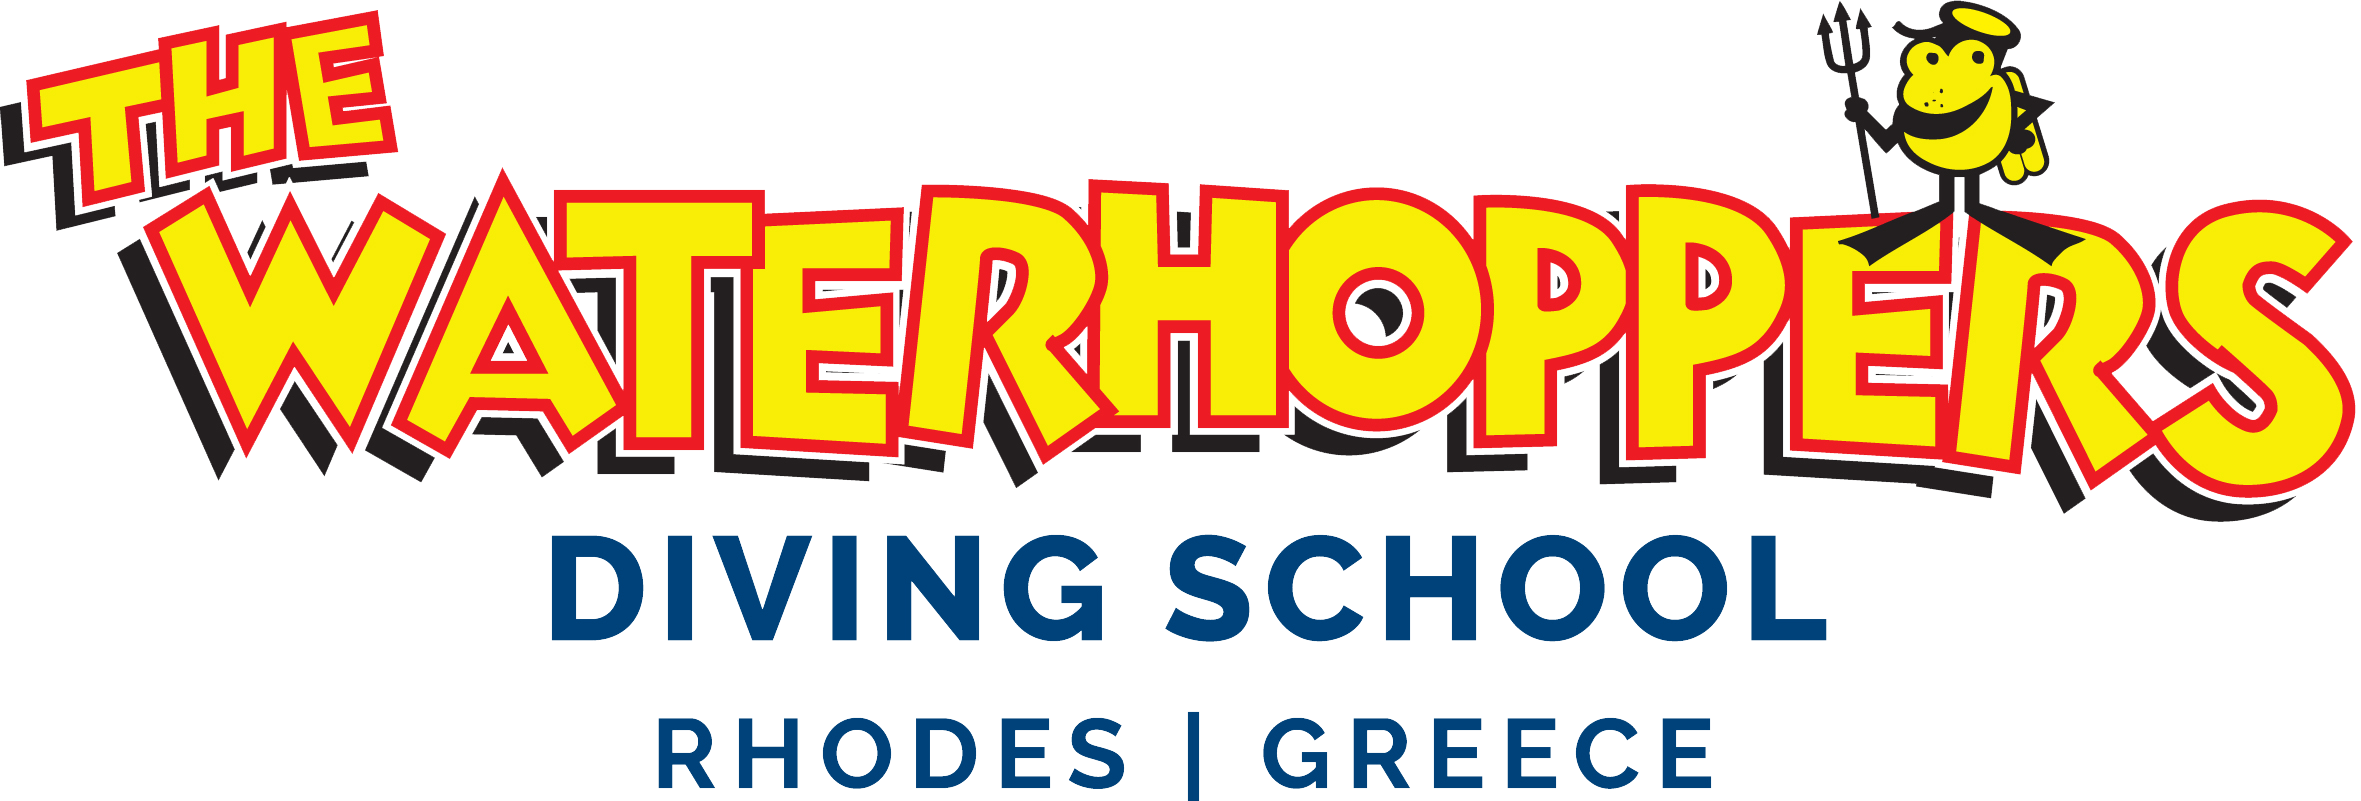 waterhopper logo